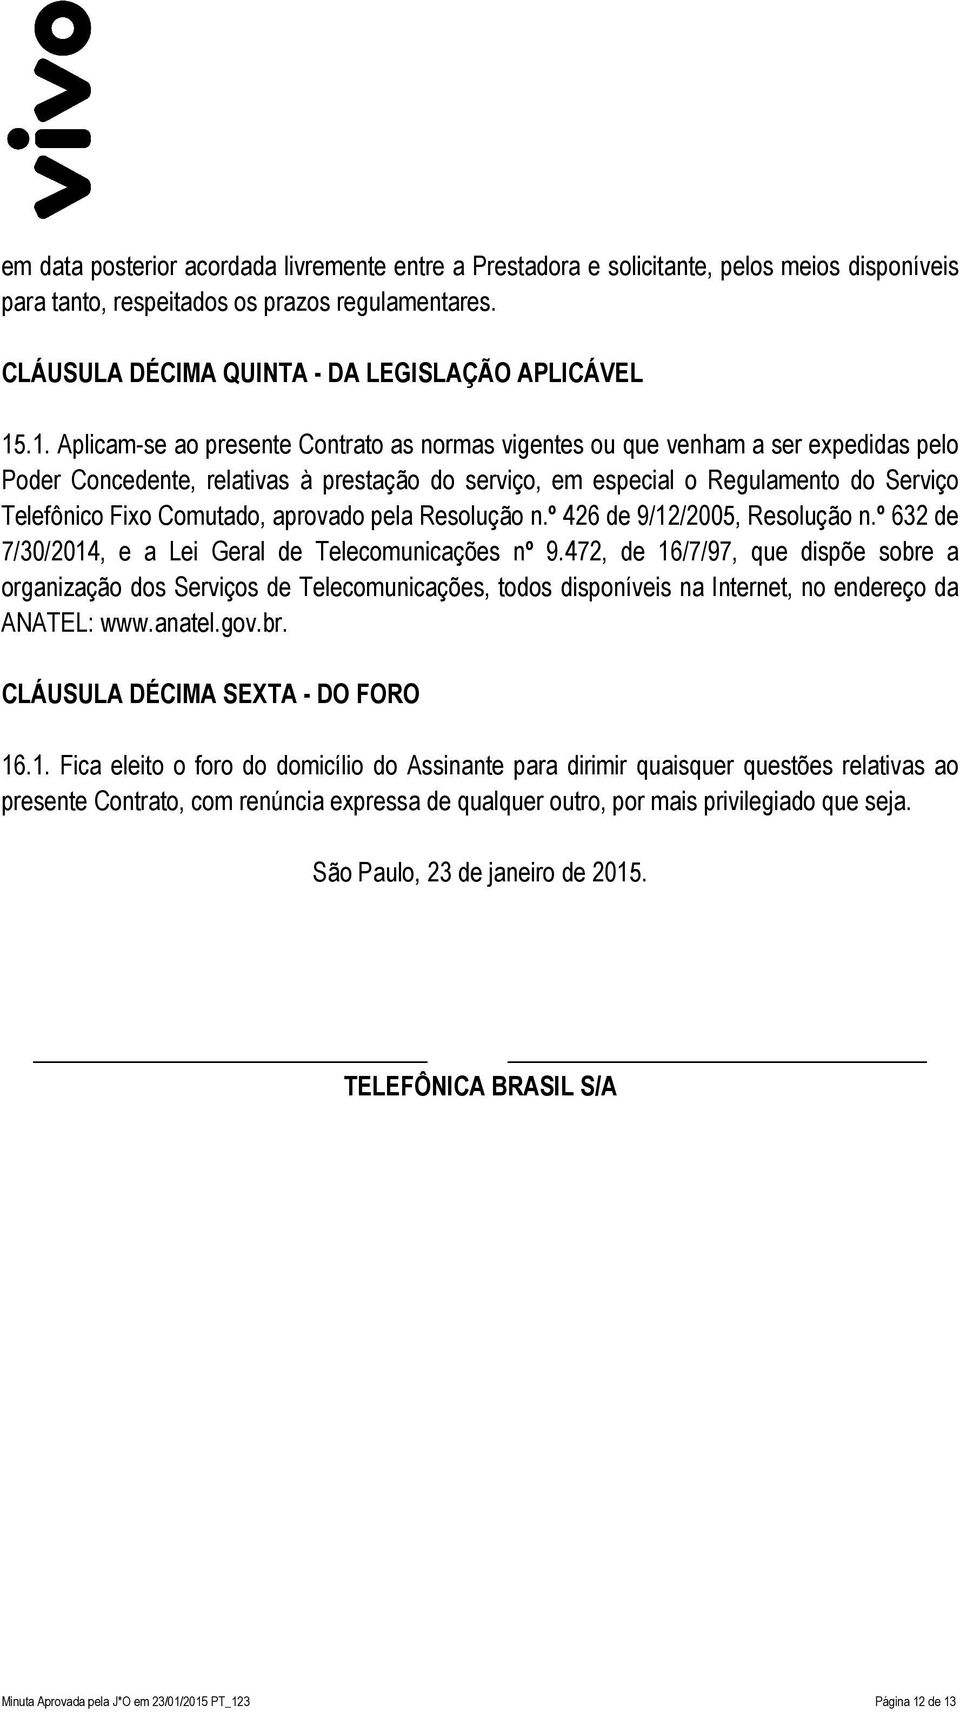 Comutado, aprovado pela Resolução n.º 426 de 9/12/2005, Resolução n.º 632 de 7/30/2014, e a Lei Geral de Telecomunicações nº 9.